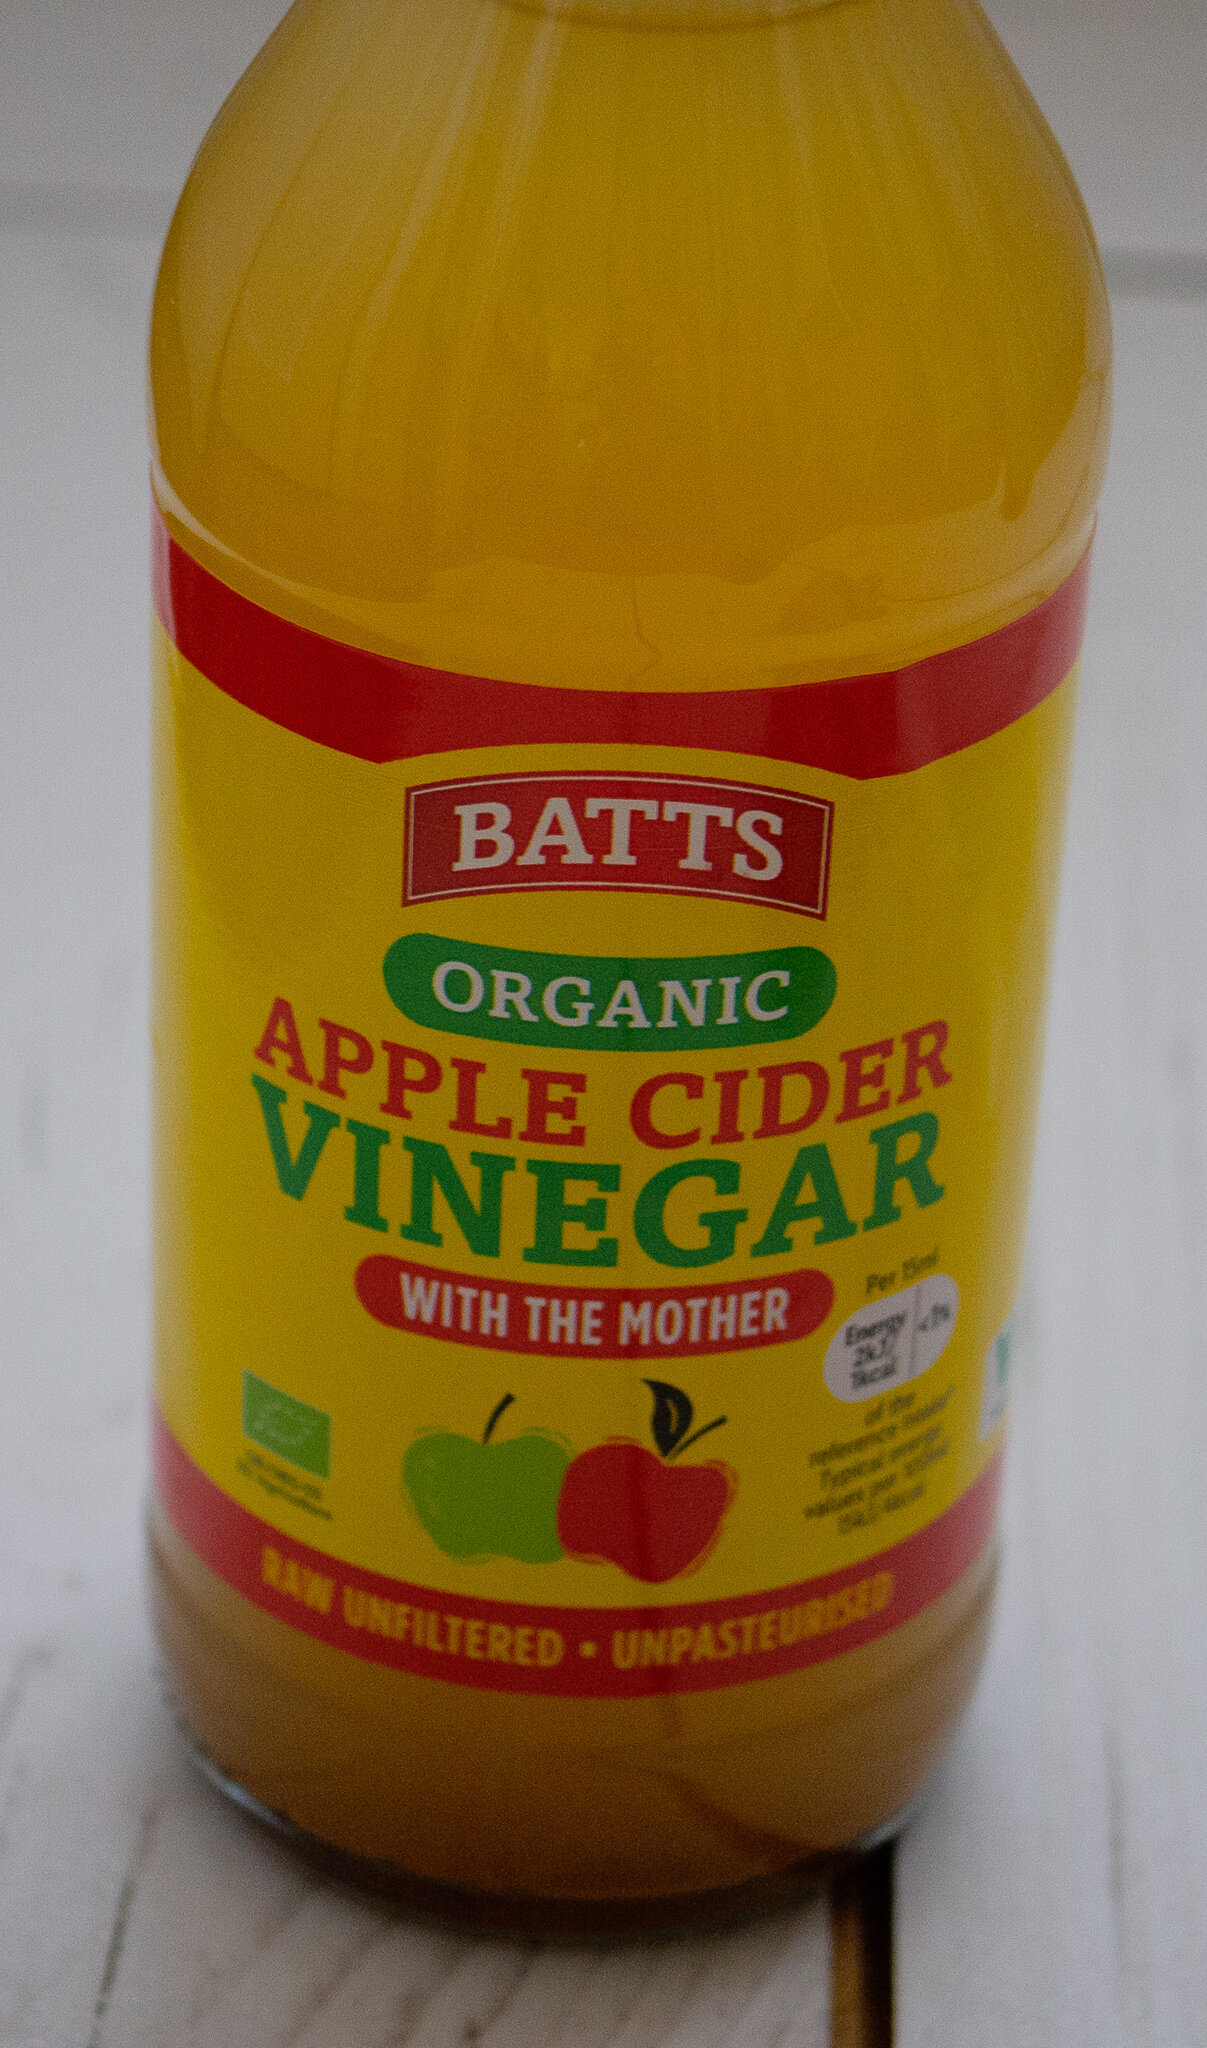 Batts organic apple cider vinegar